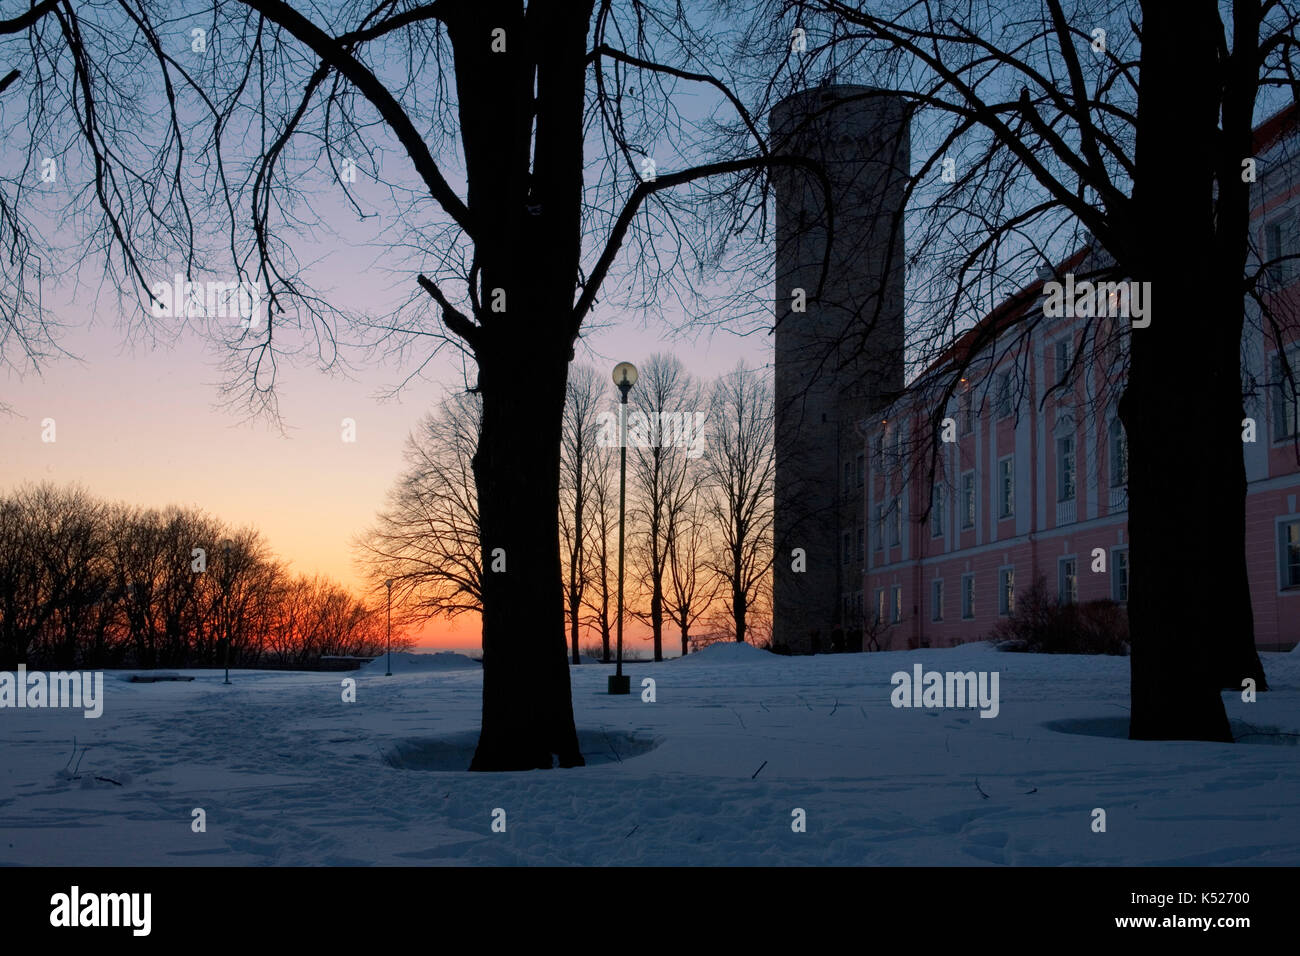 Kuberneri AED (jardin du Gouverneur), Toompea, Tallinn, Estonie sous une lourde chute de neige: Les édifices du Parlement du château de Toompea et de la tour Pikk Hermann Banque D'Images